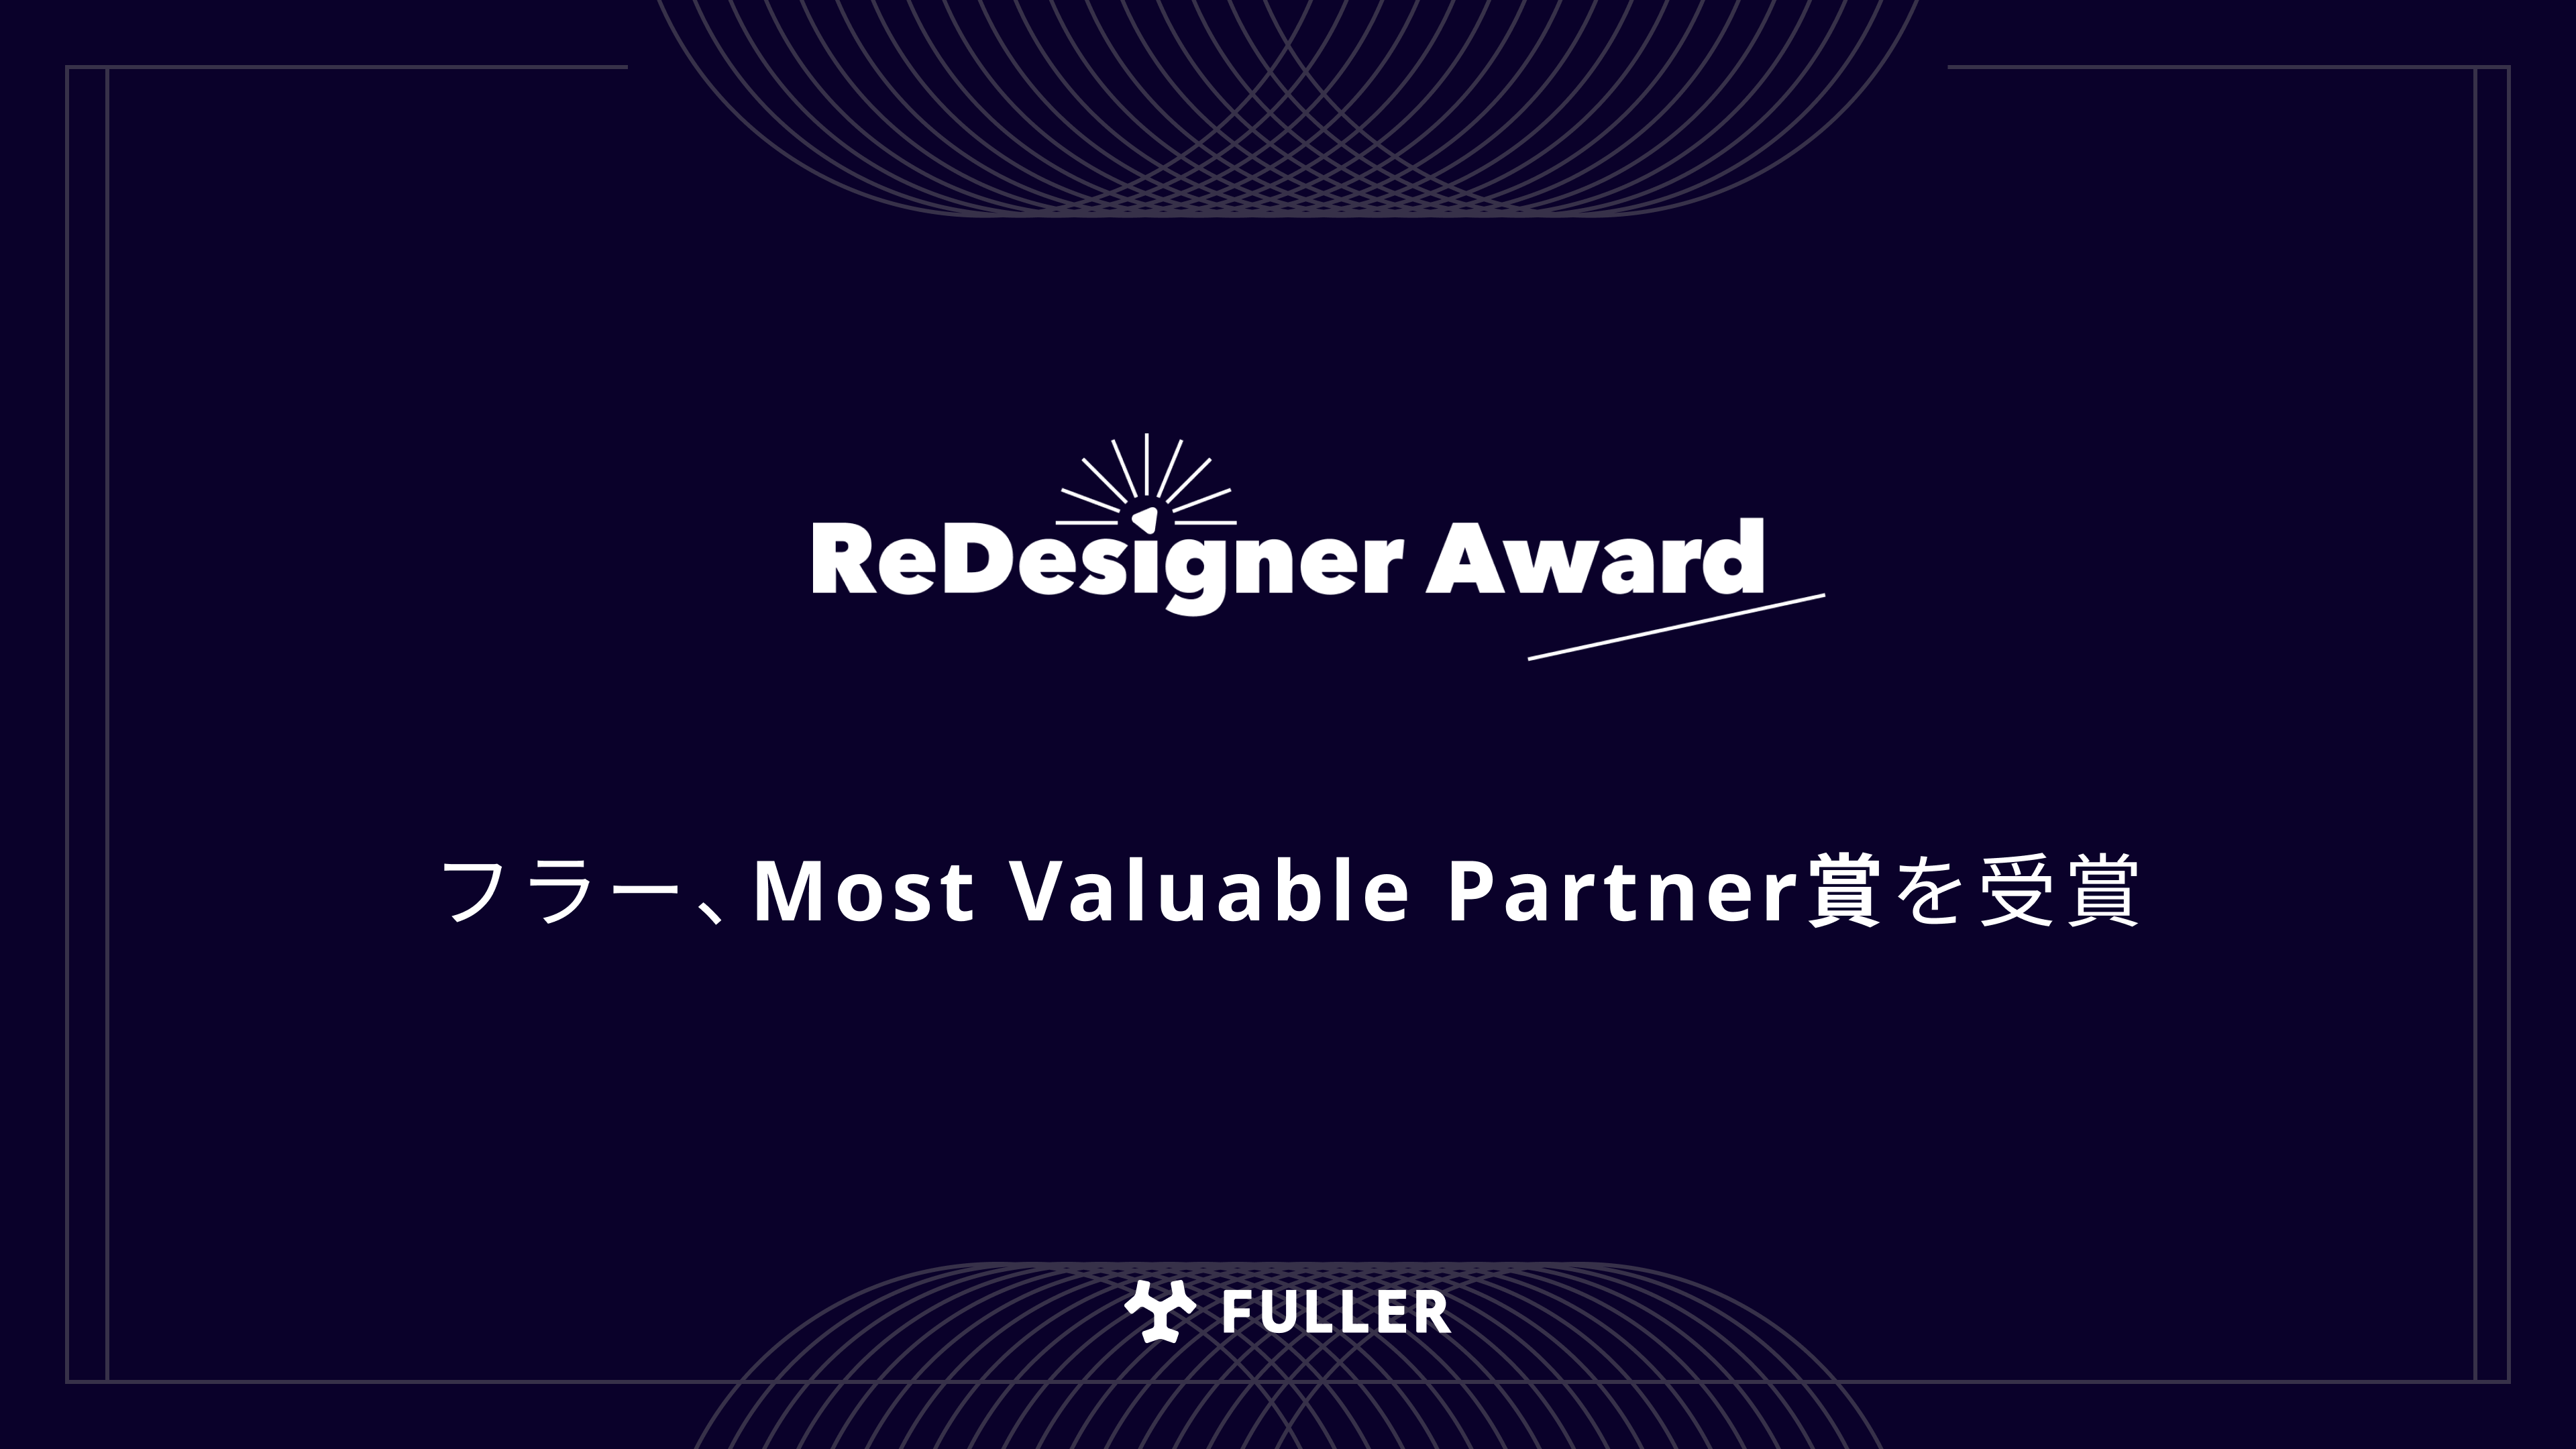 フラー、ReDesigner AwardでMost Valuable Partner賞を受賞。